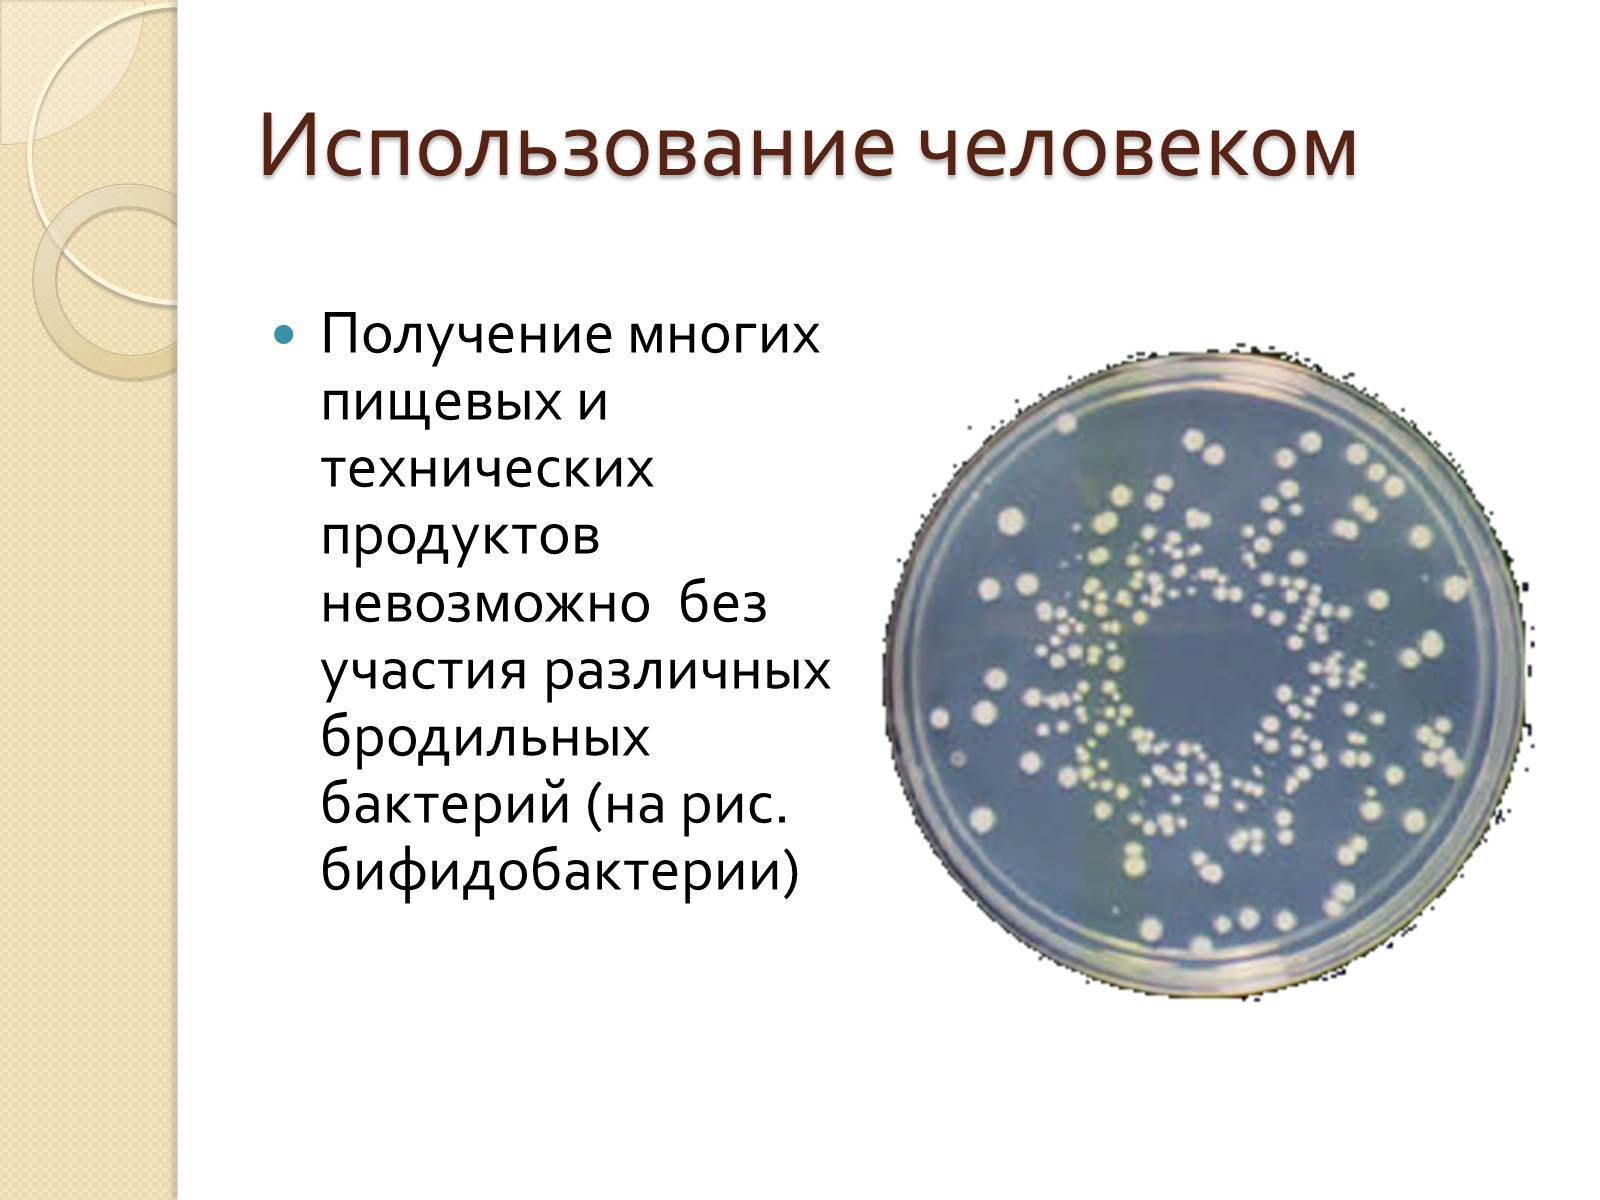 Человек прокариот. Роль прокариот. Роль прокариот в природе. Значение прокариот в жизни человека. Бактерии прокариоты.